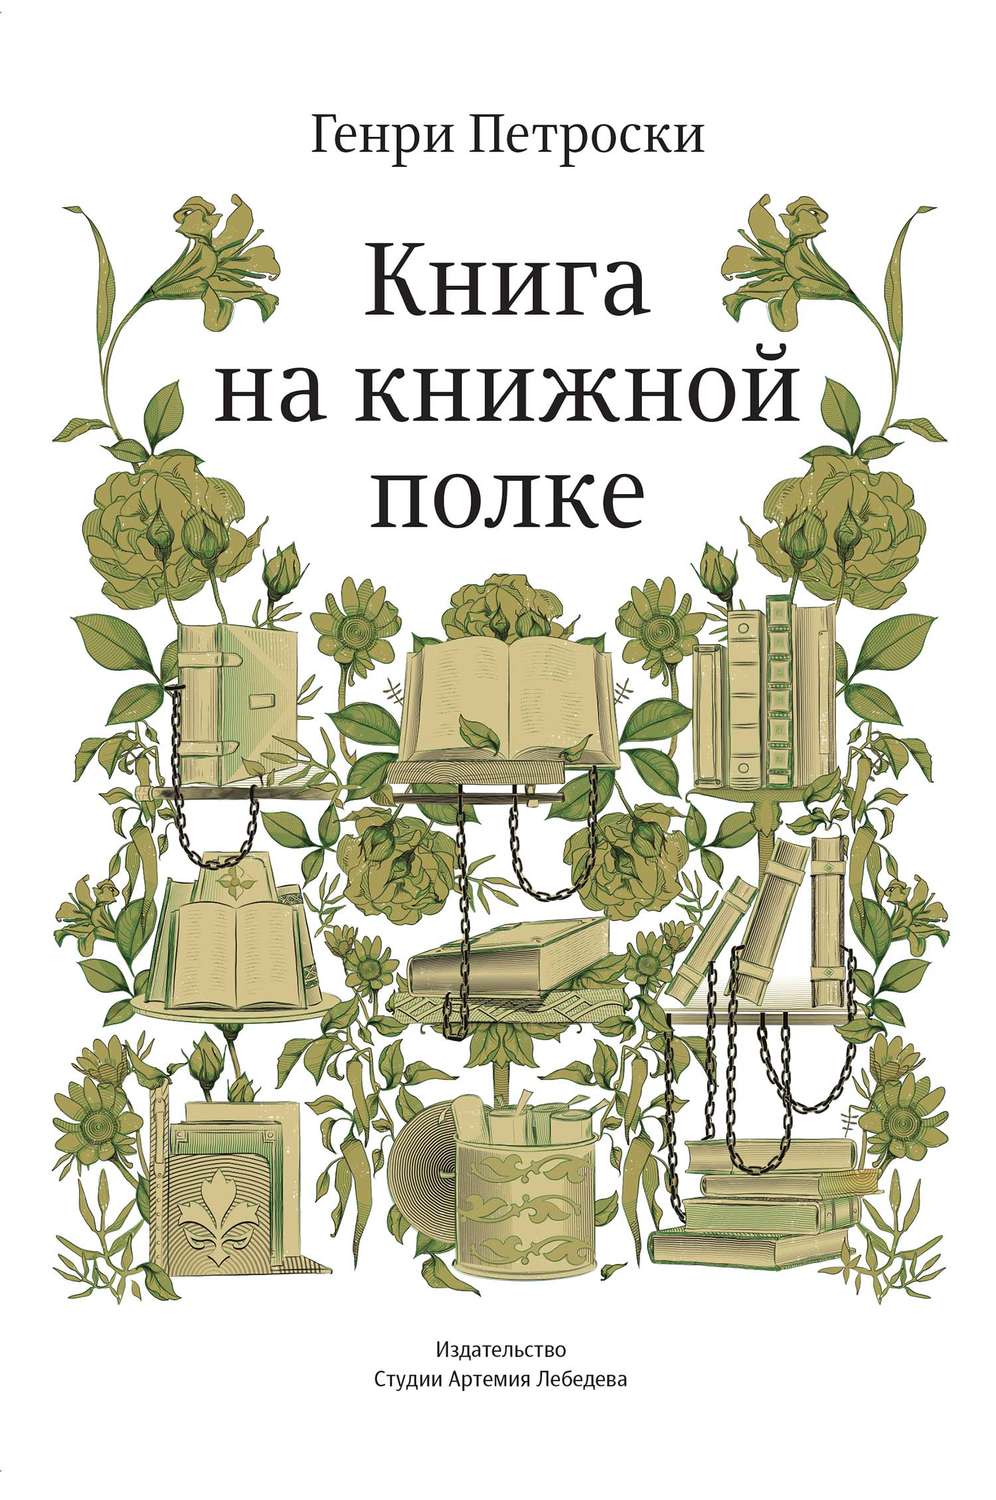 Книга на книжной полке Генри Петроски